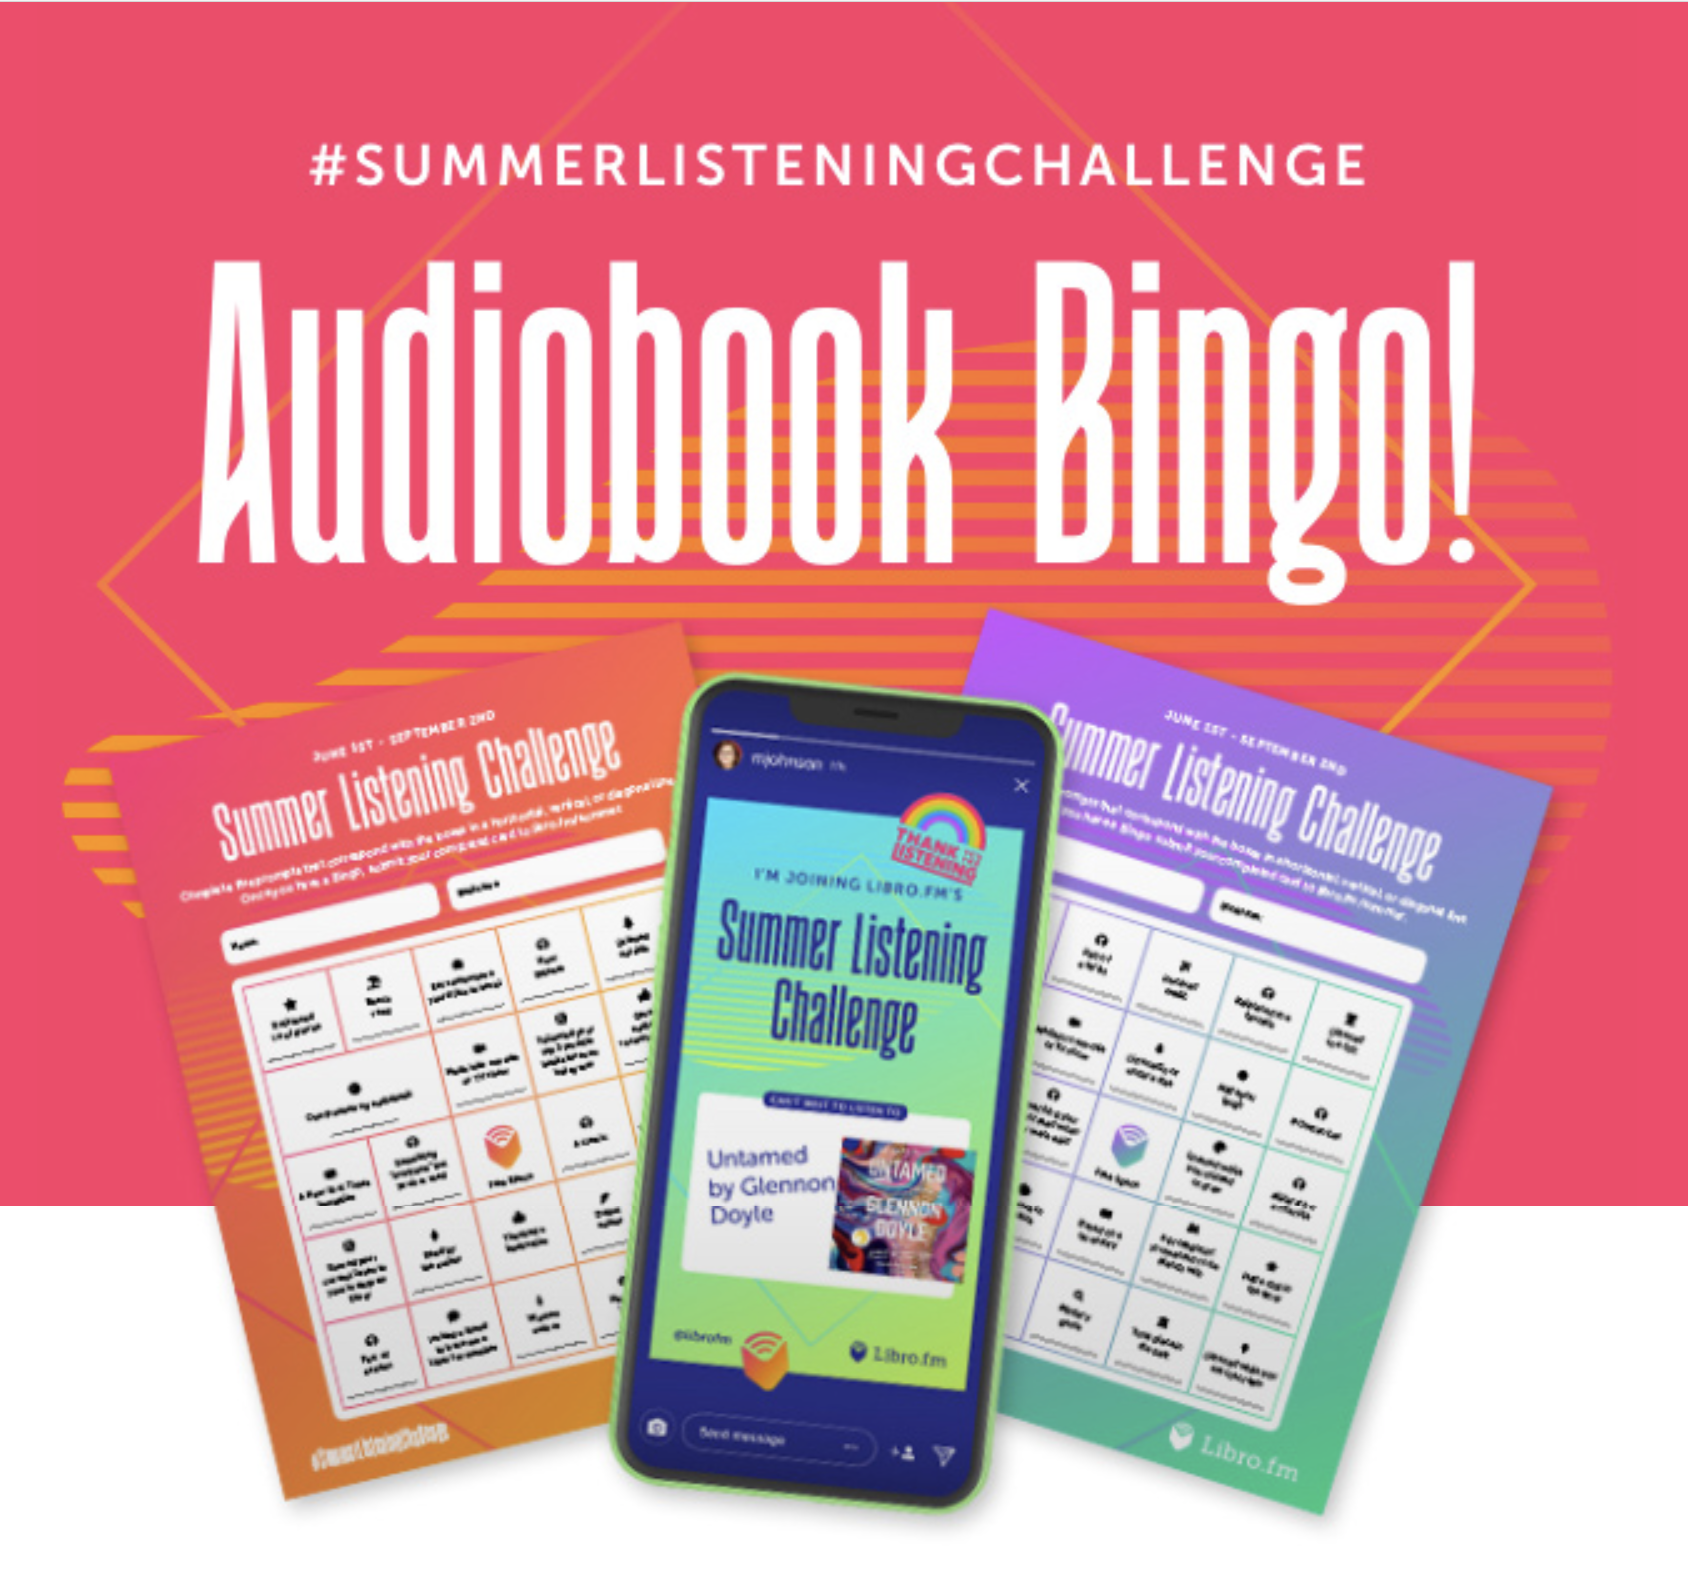 #summerlisteningchallenge Audiobook Bingo!